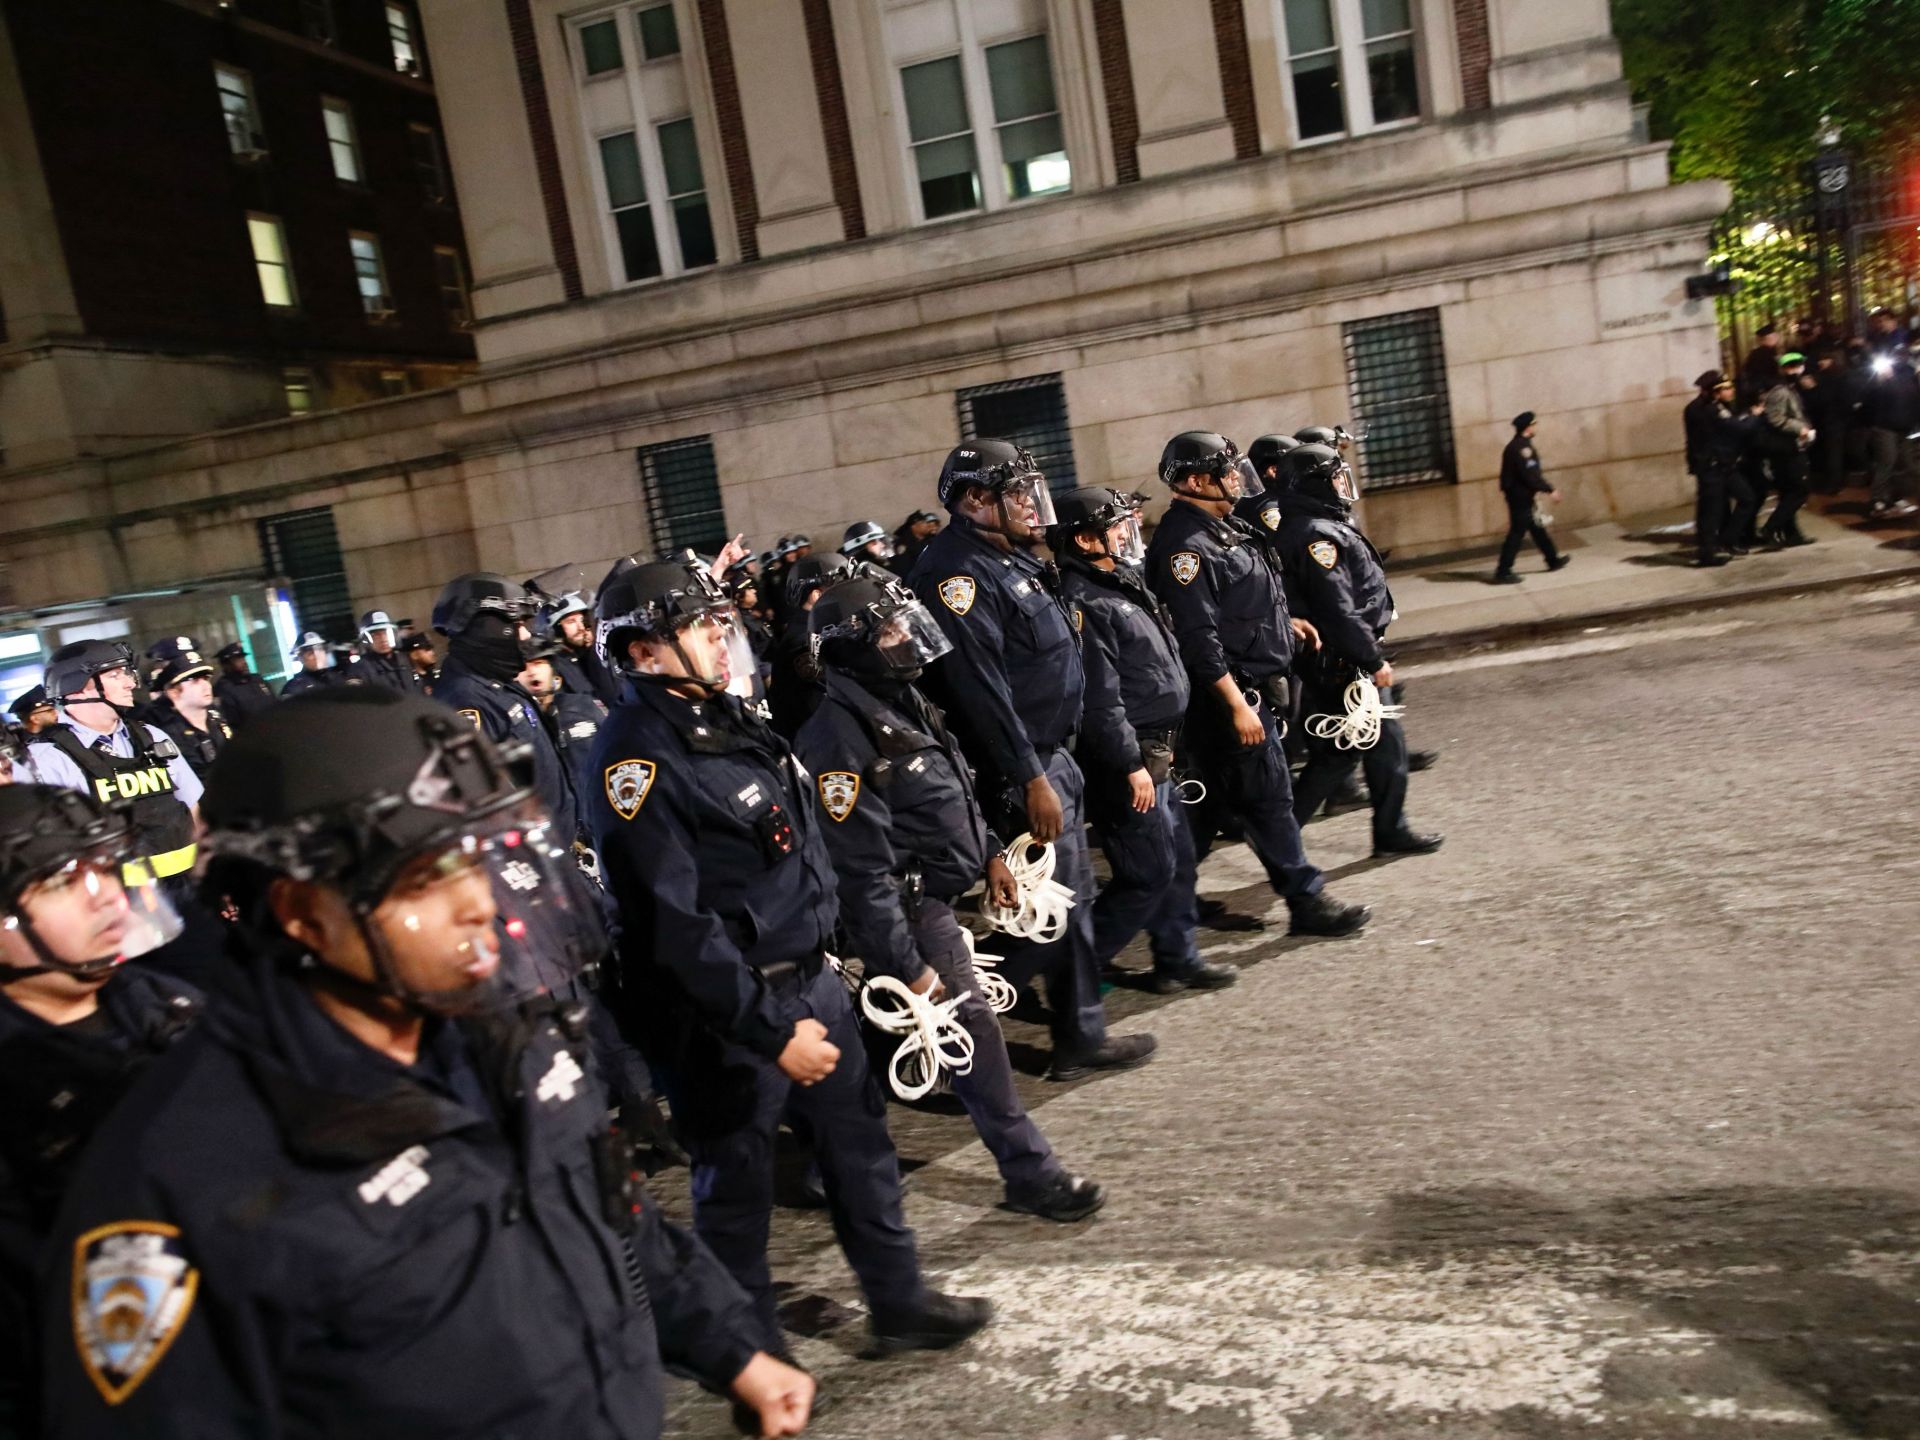 شرطة نيويورك تقتحم جامعة كولومبيا وتفض الاعتصام الداعم لغزة | أخبار – البوكس نيوز